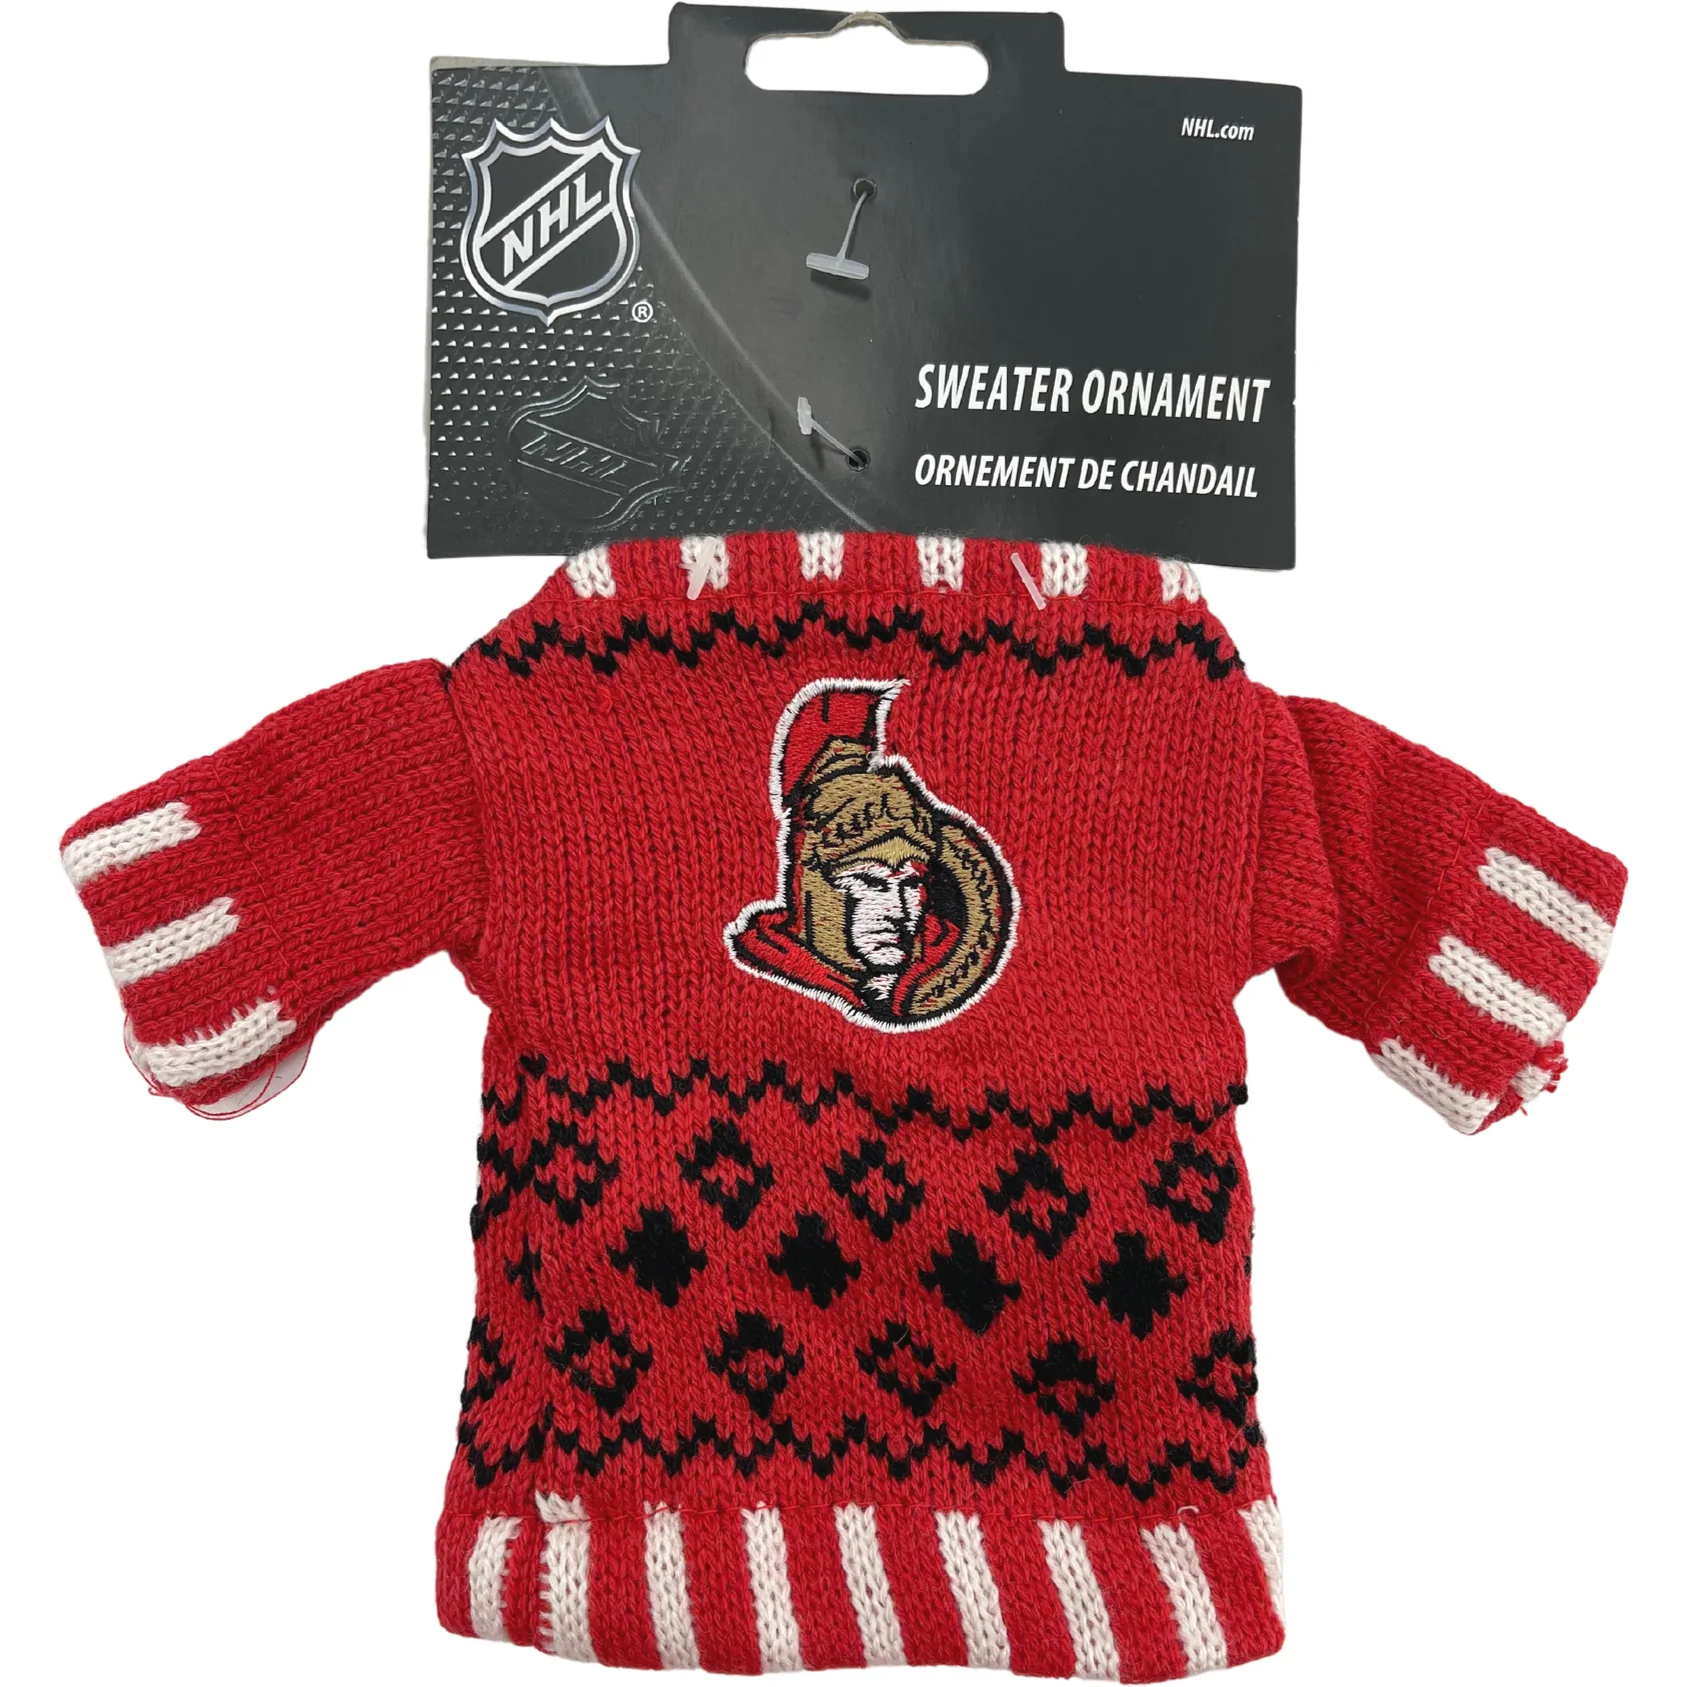 NHL Ottawa Senators Sweater Ornament / Team Logo / Red & White / Christmas Tree Ornament